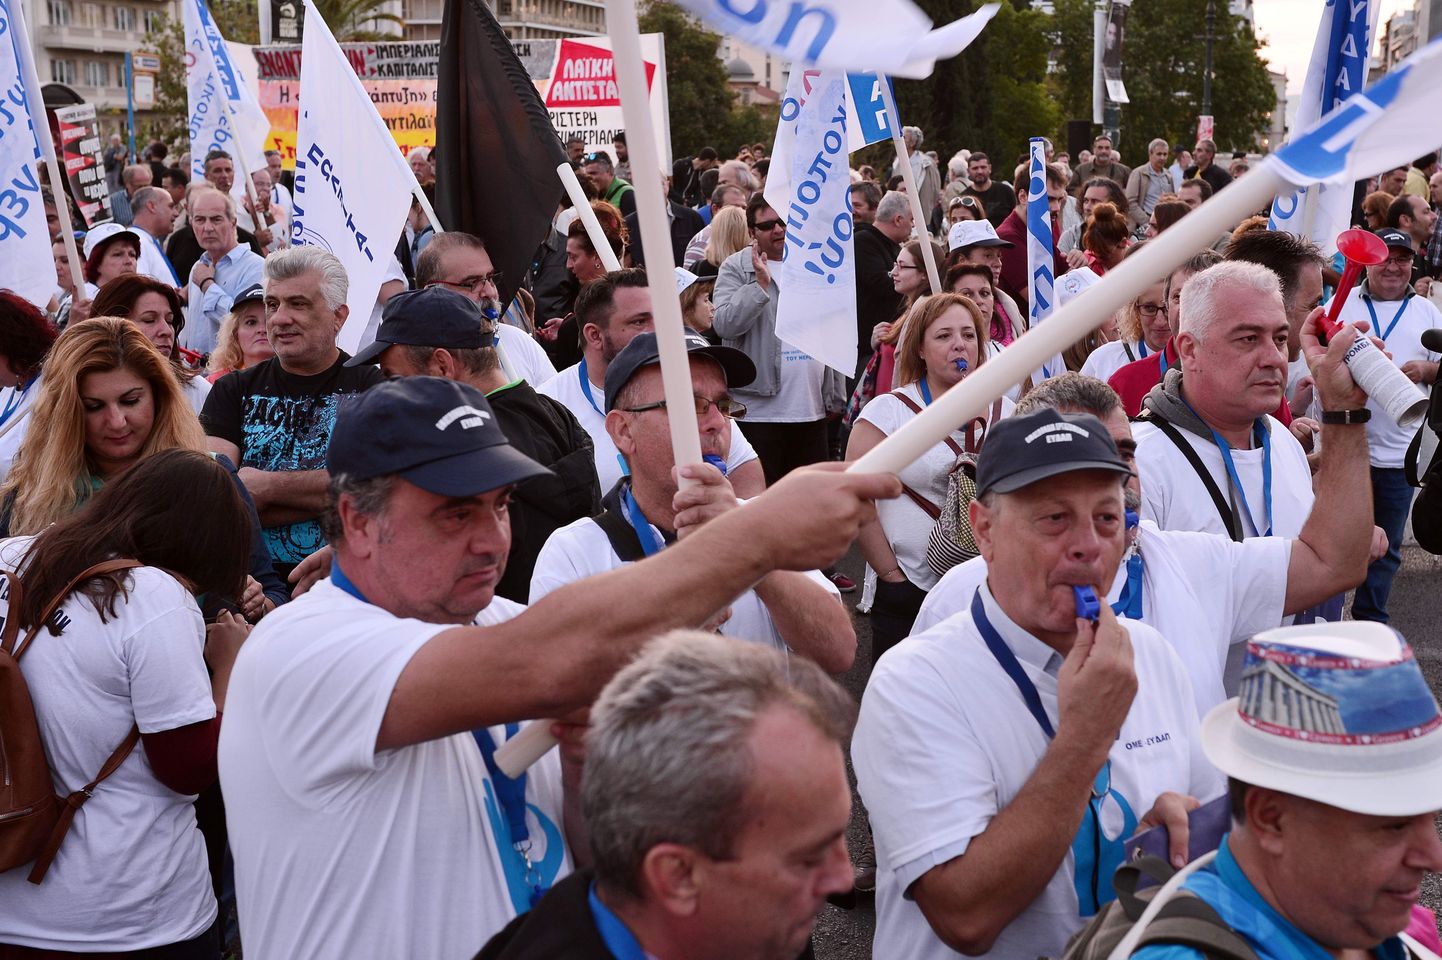 Kreeklased teisipäeval parlamendi juures protestimas